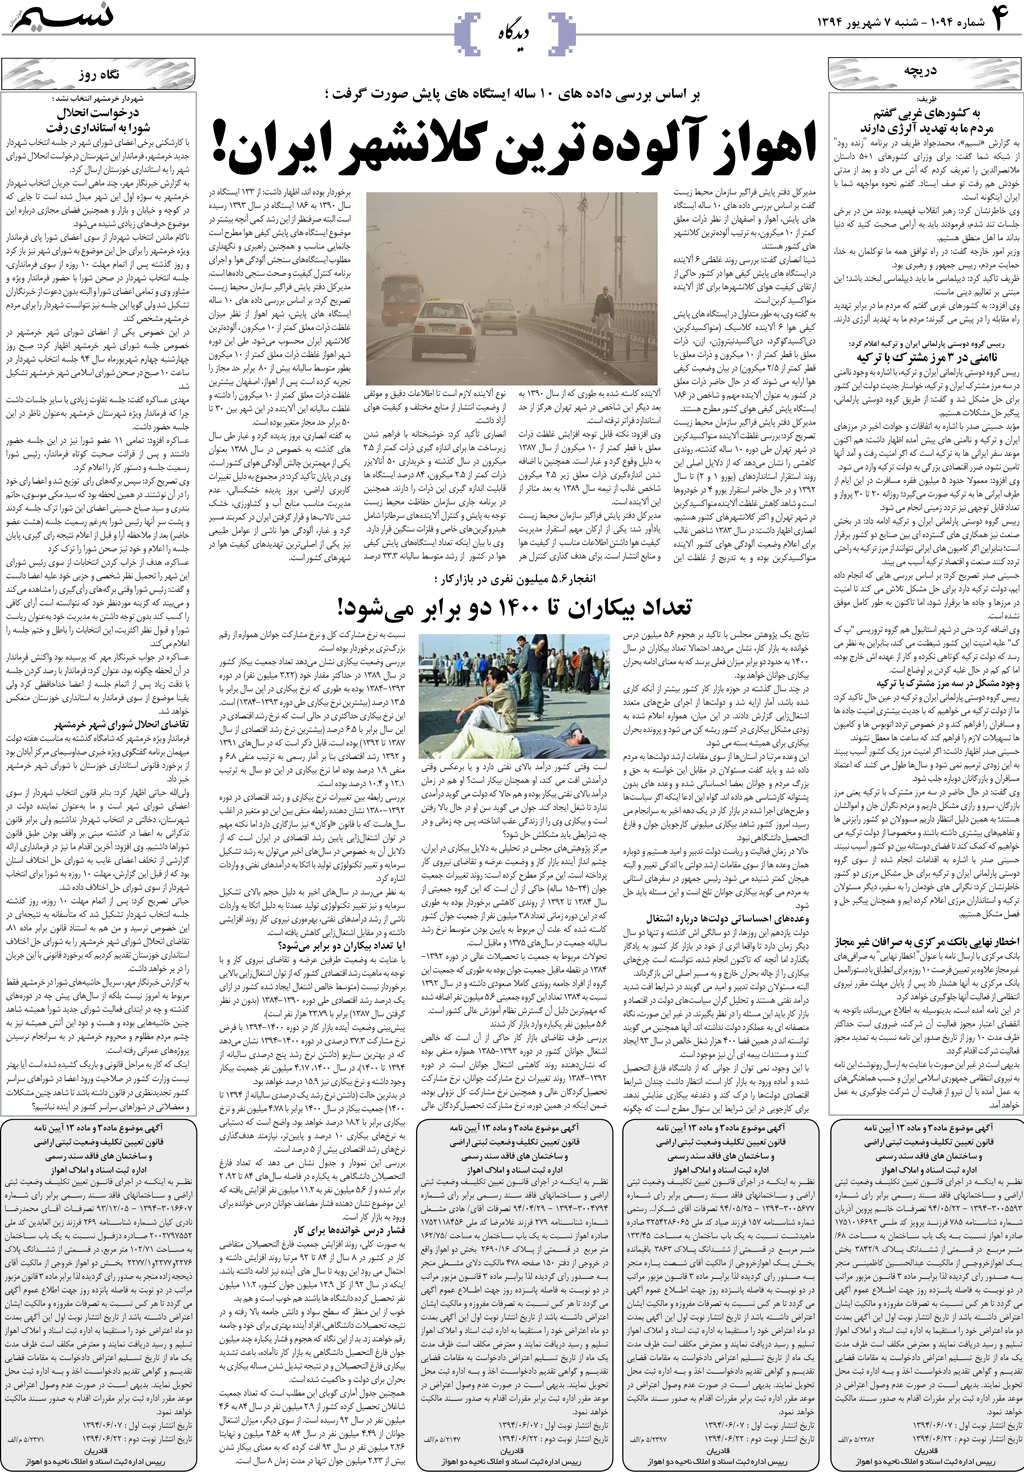 صفحه دیدگاه روزنامه نسیم شماره 1094